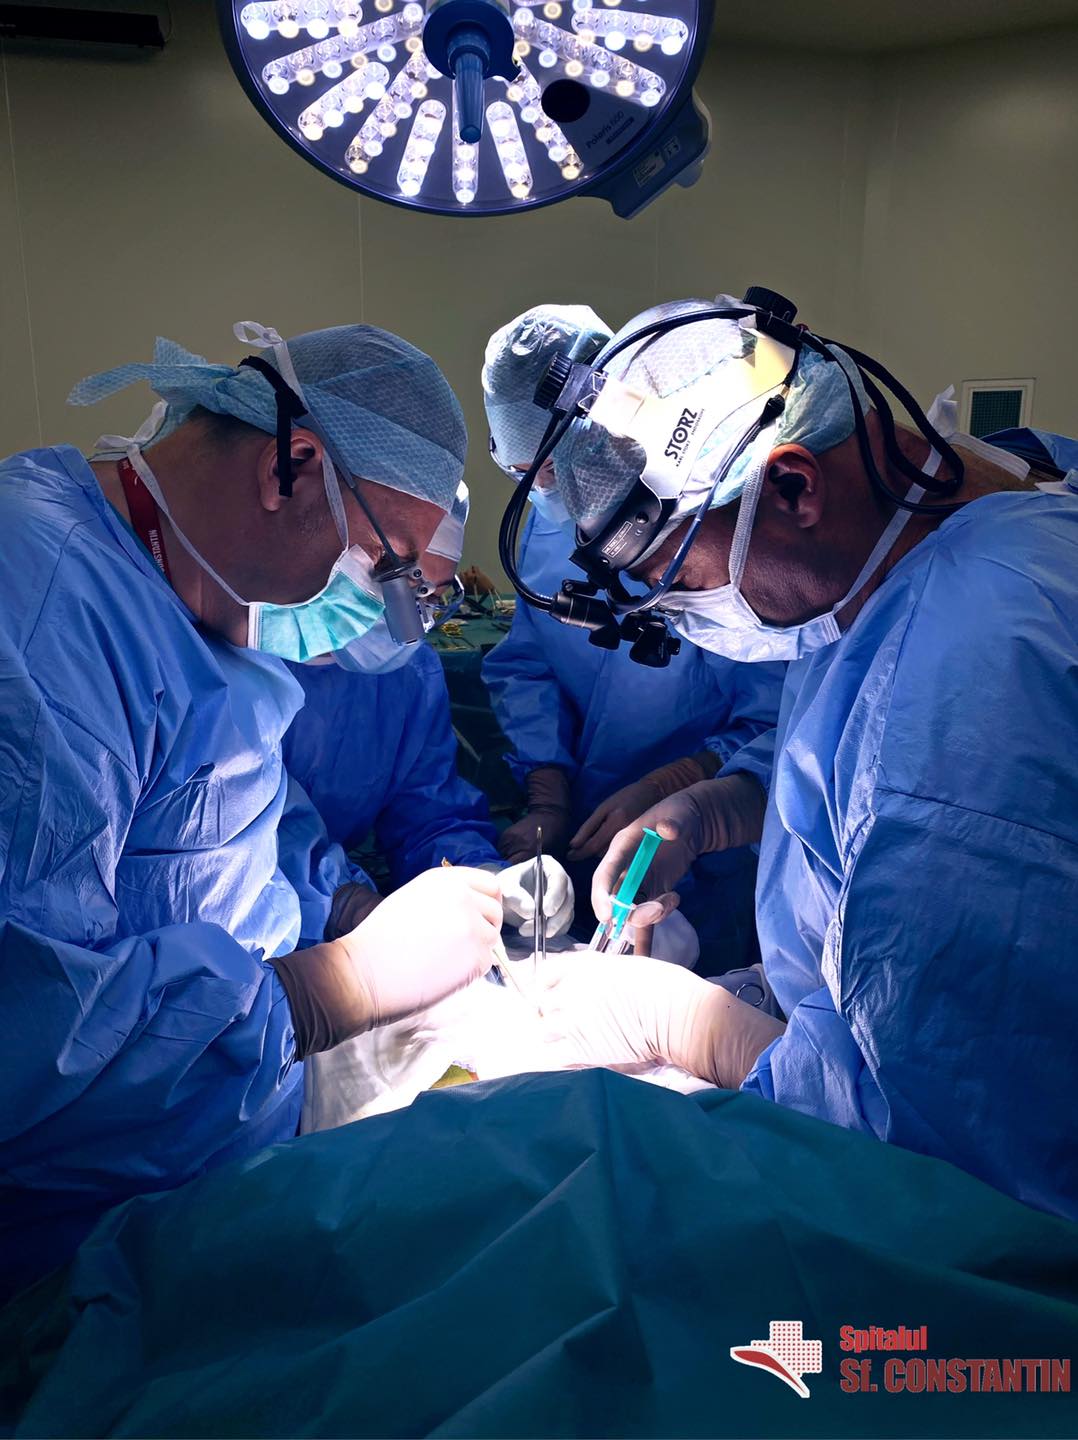 Colaborare româno-italiană într-o complexă intervenție chirurgicală desfășurată la Spitalul “Sfântul Constantin” din Brașov